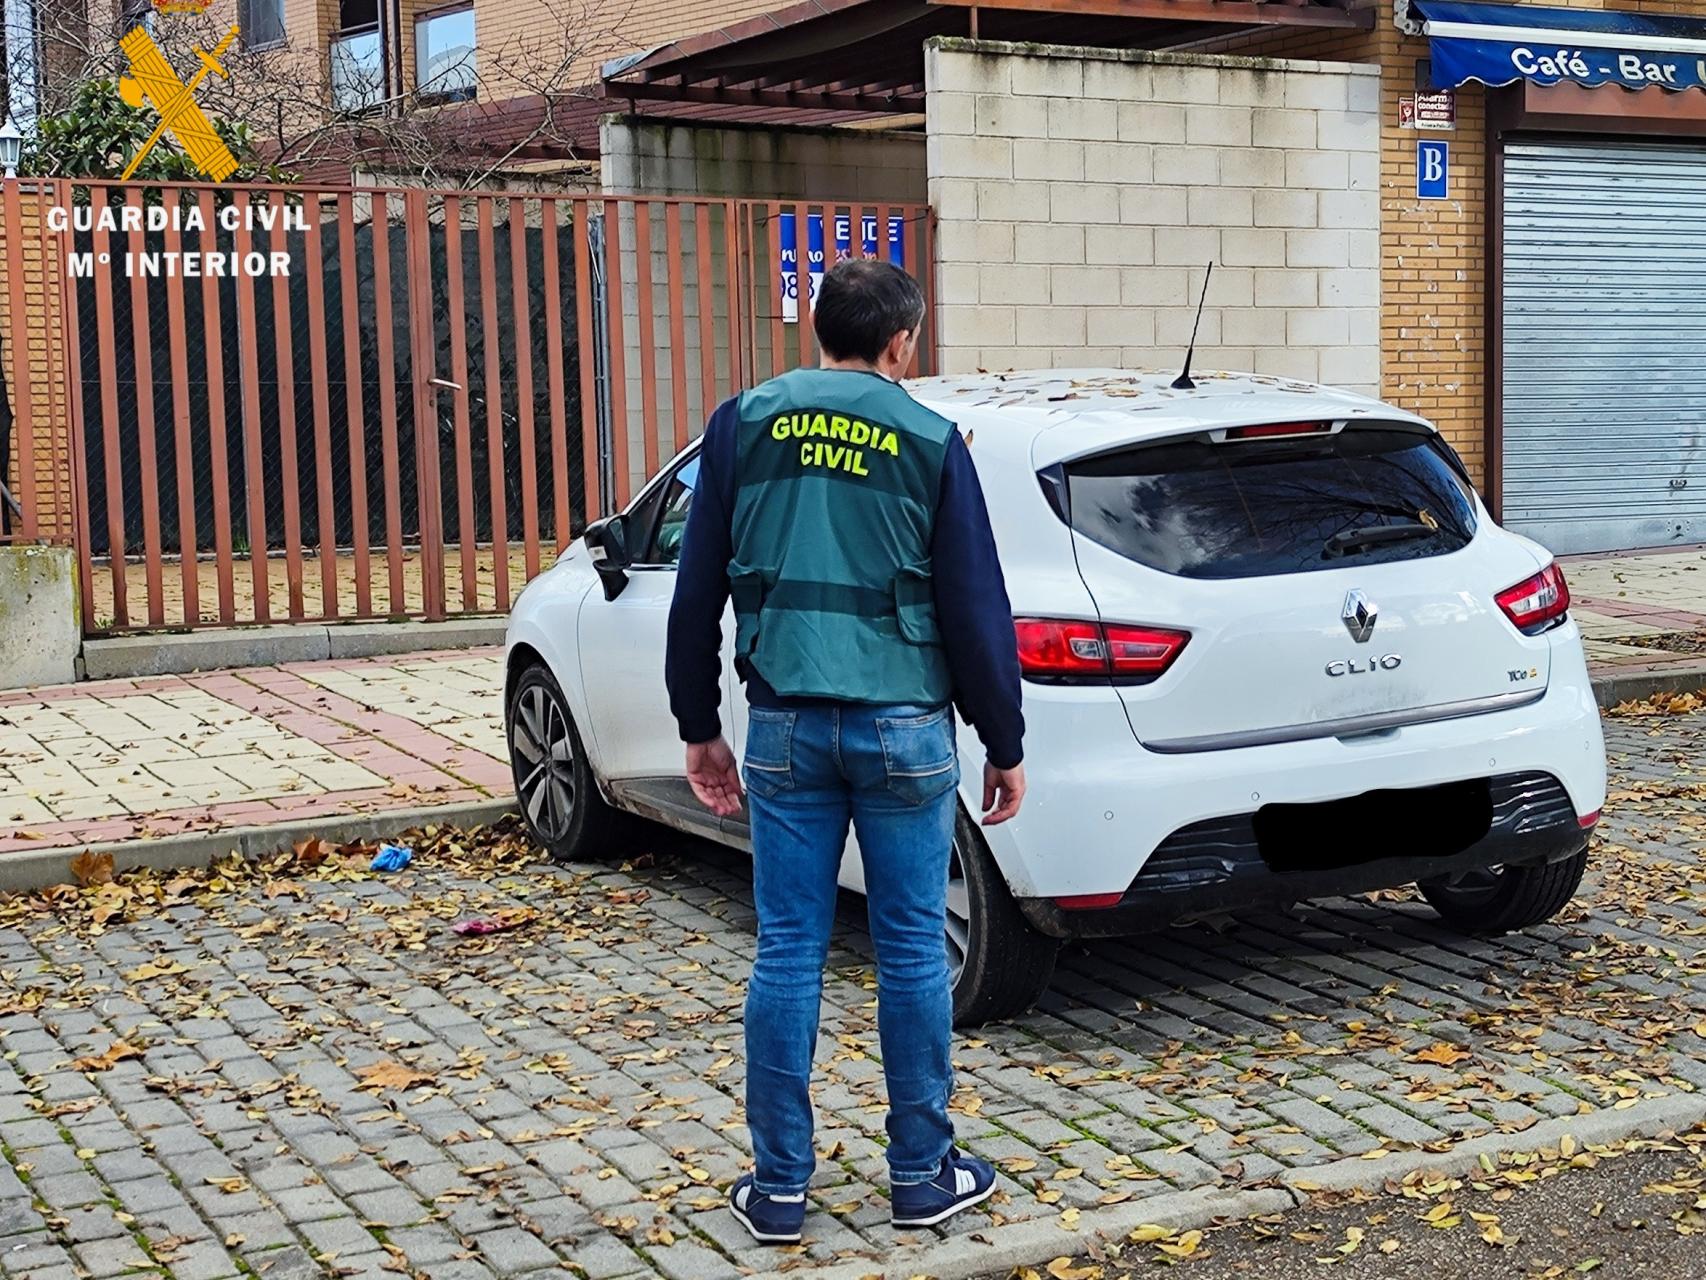 Imagen de un Guardia Civil con uno de los vehículos robados en Segovia.